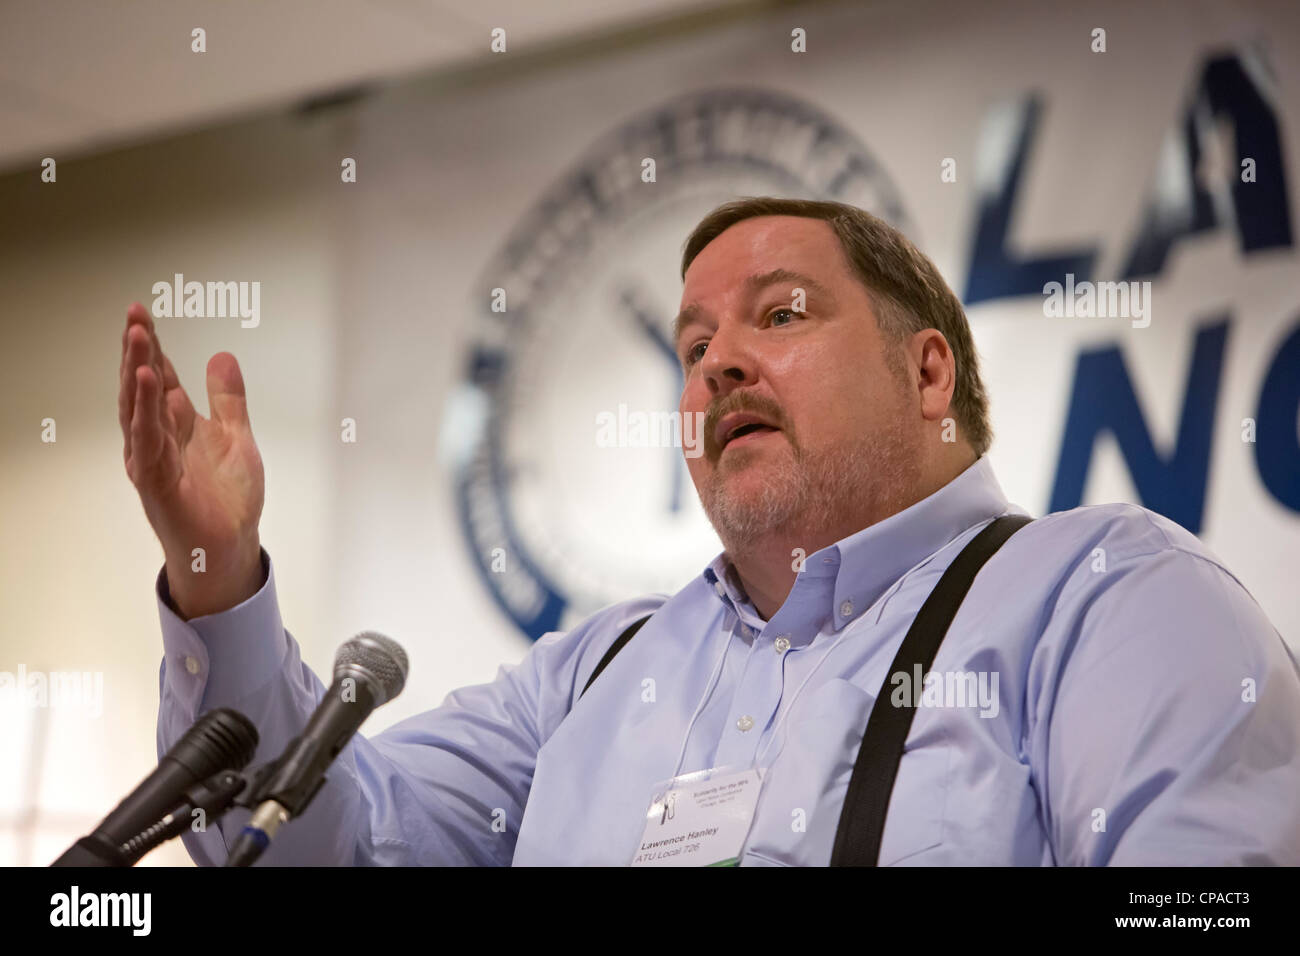 Rosemont, Illinois - Amalgamated Transit Union President Lawrence Hanley spoke to the 2012 Labor Notes Conference. Stock Photo